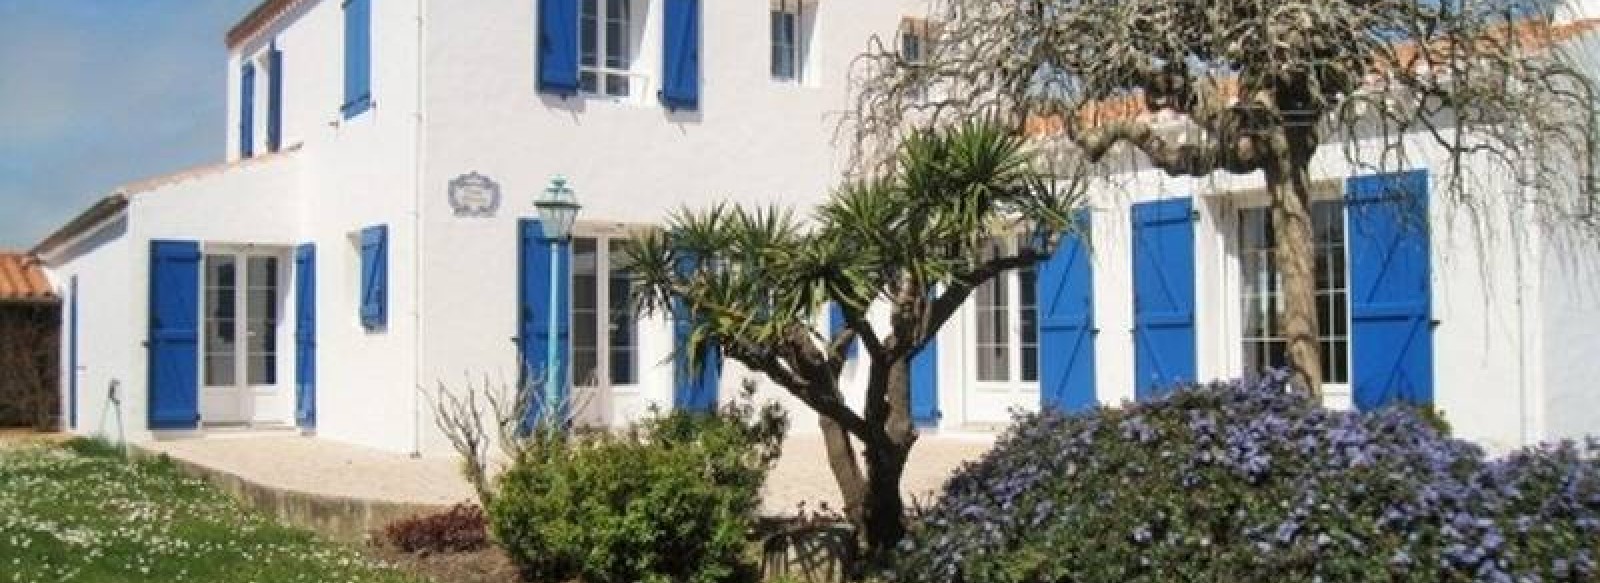 Maison a proximite du centre de Noirmoutier en l'Ile